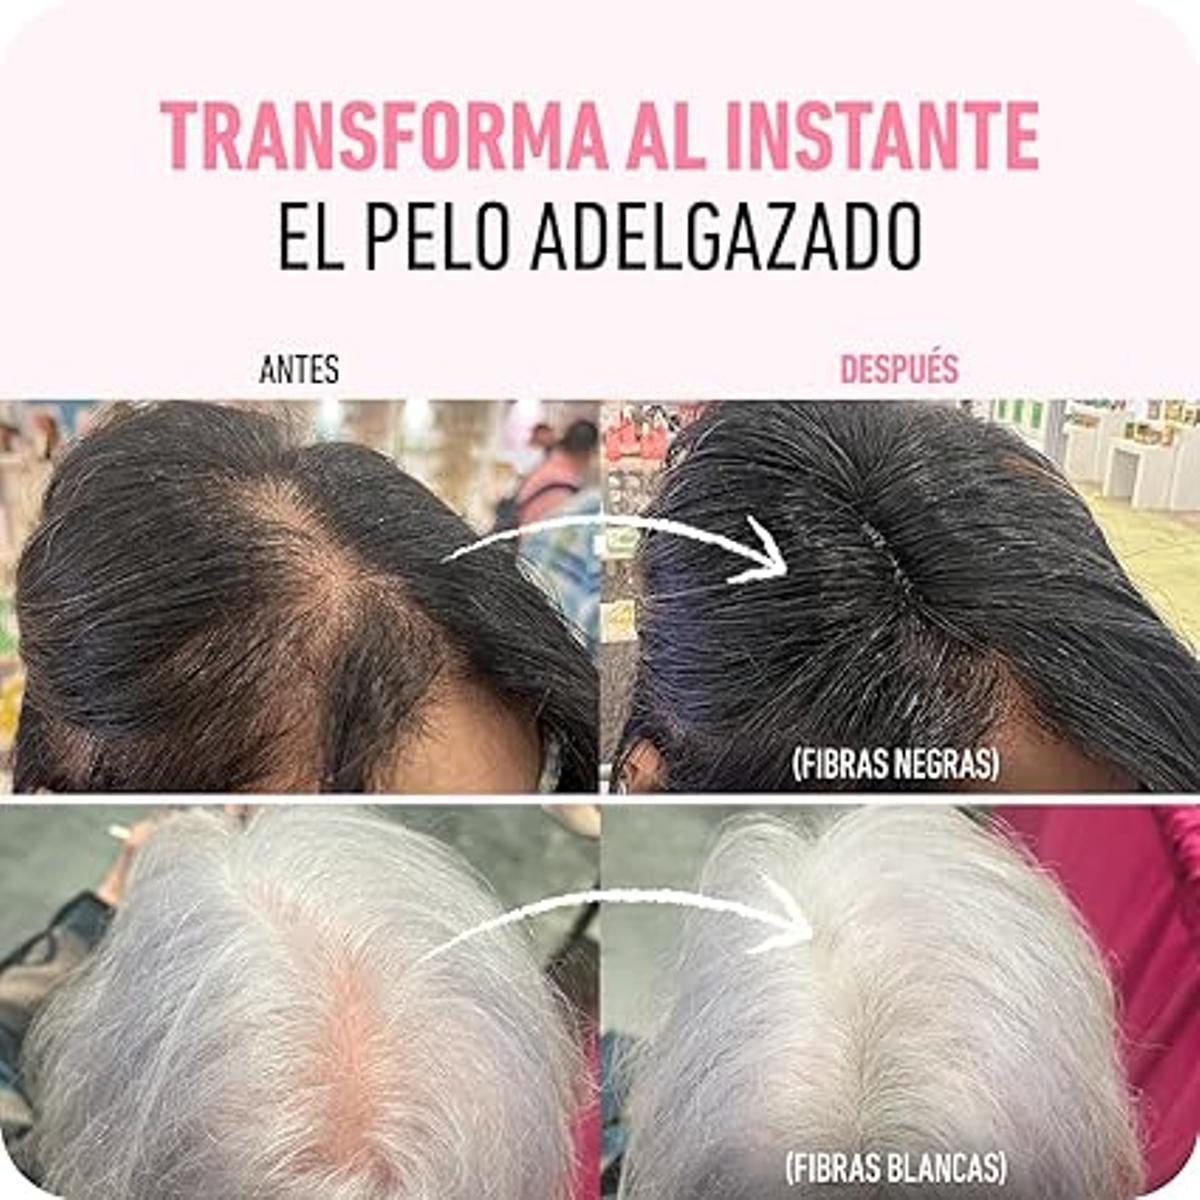 Estos polvos sustituyen a los tradicionales tintes permanentes y permiten tapar las zonas de cabello más fino y transformar tu aspecto.